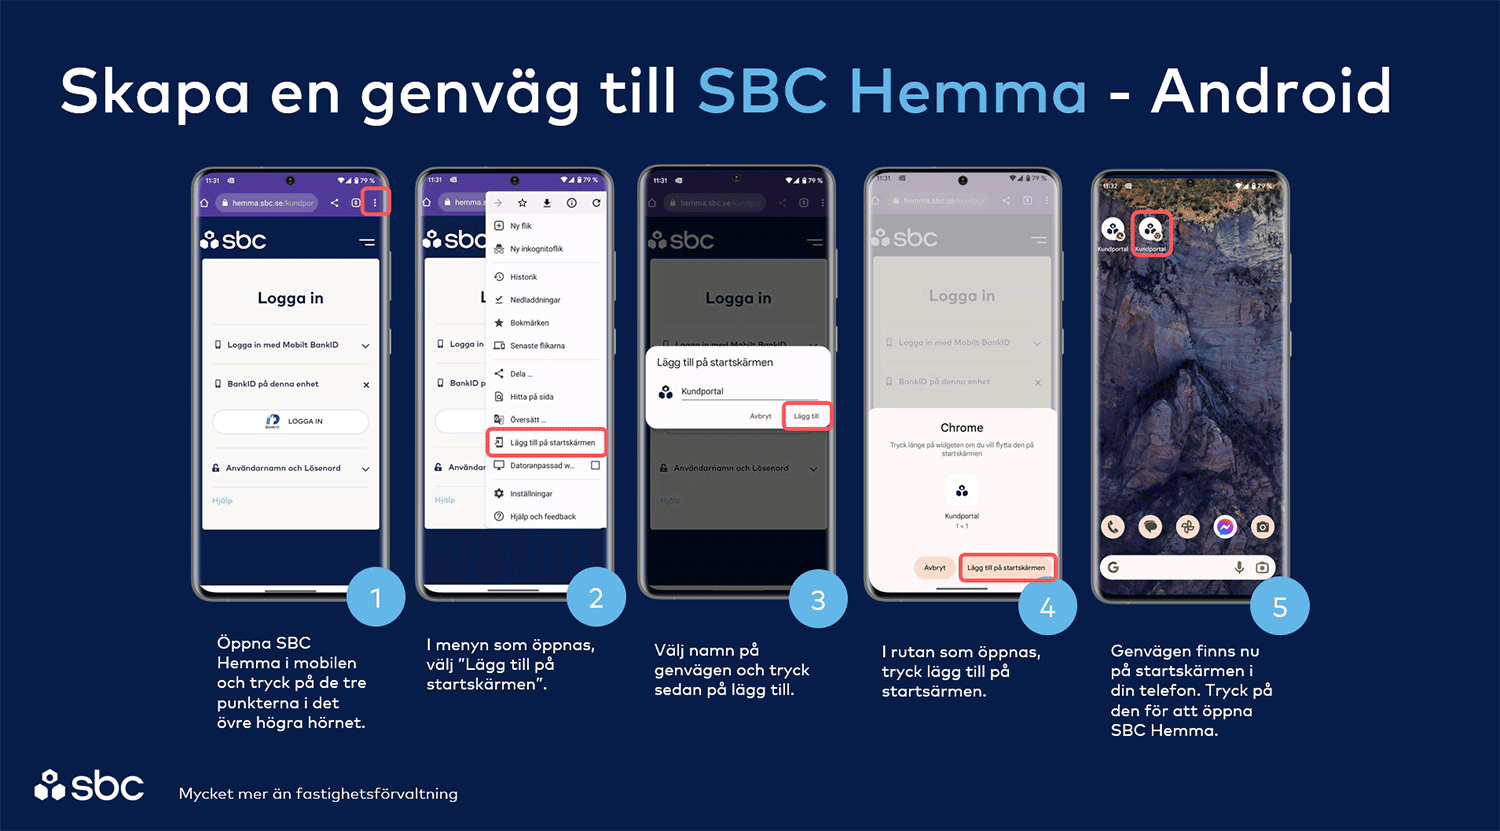 Skapa en genväg till SBC Hemma - Android